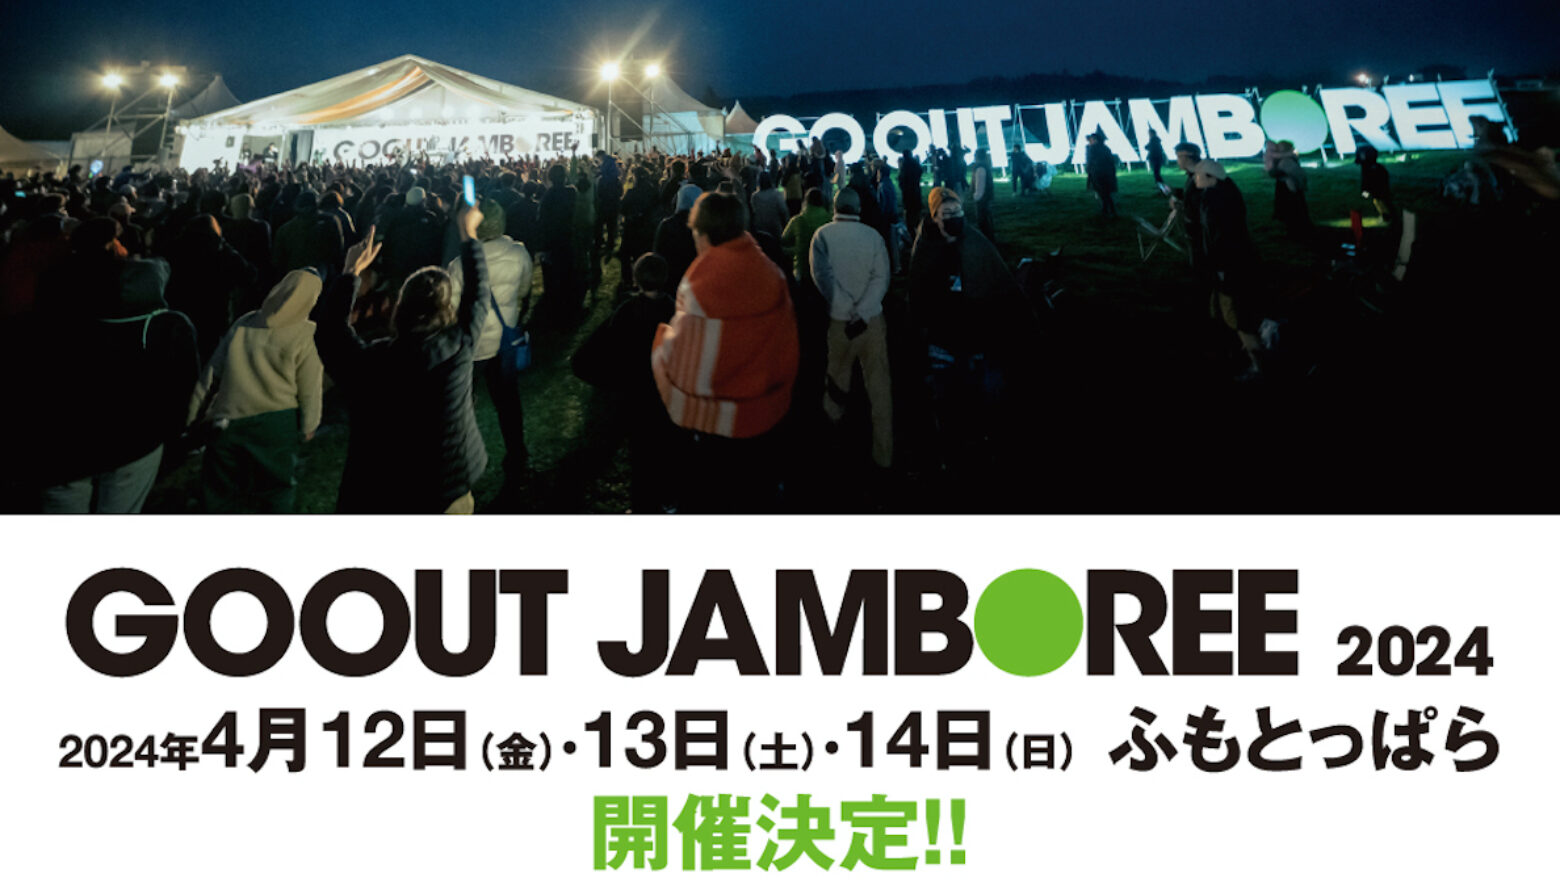 定価 go out JAMBOREE 2019 キャンプチケット - アウトドア